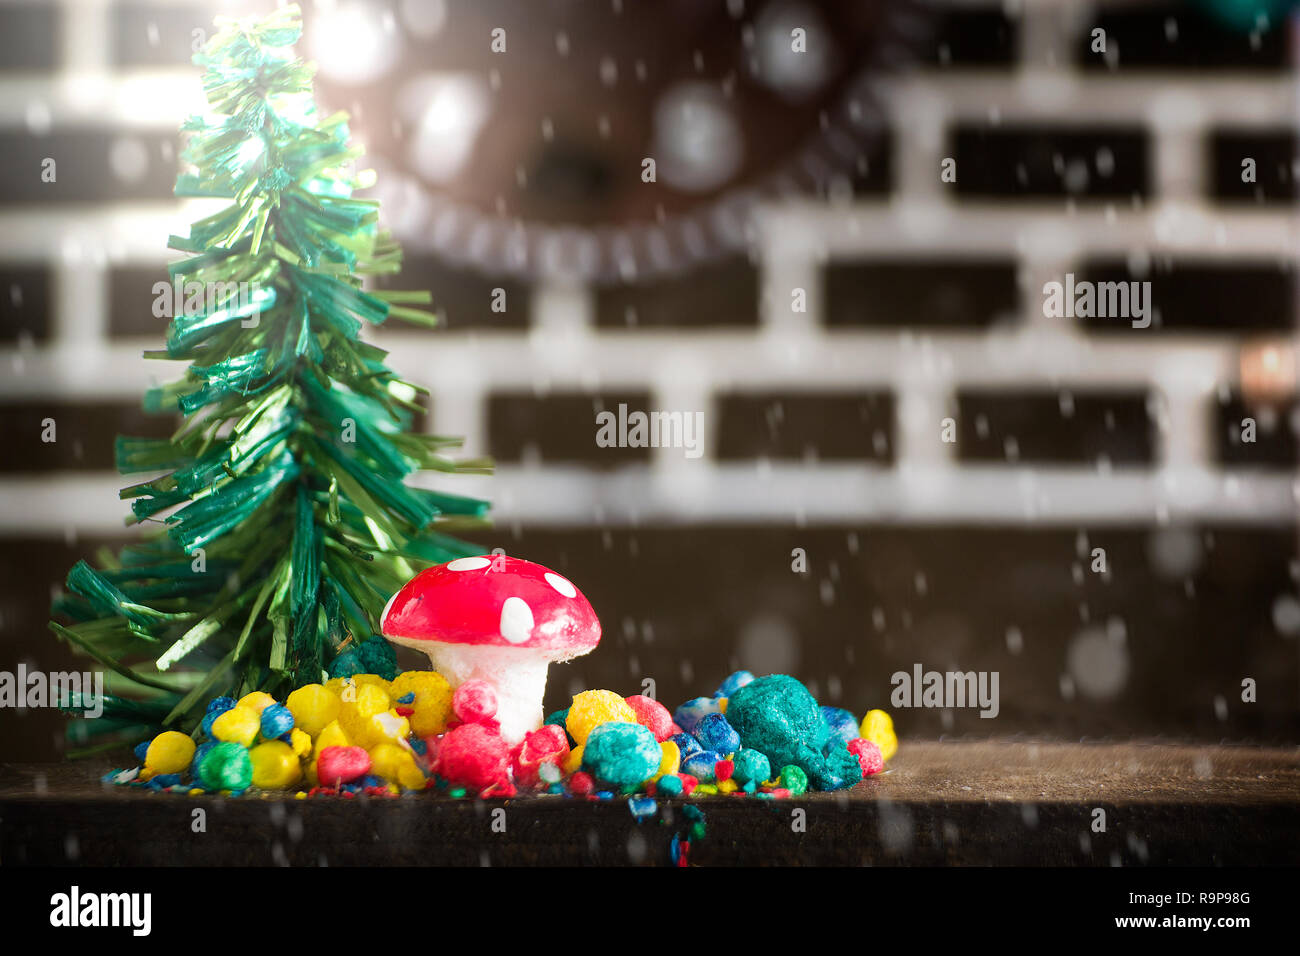 Noël arrière-plan. Sapin, sucettes, bonbons sucrés et une décoration aux couleurs claires. Copie espace vide Banque D'Images